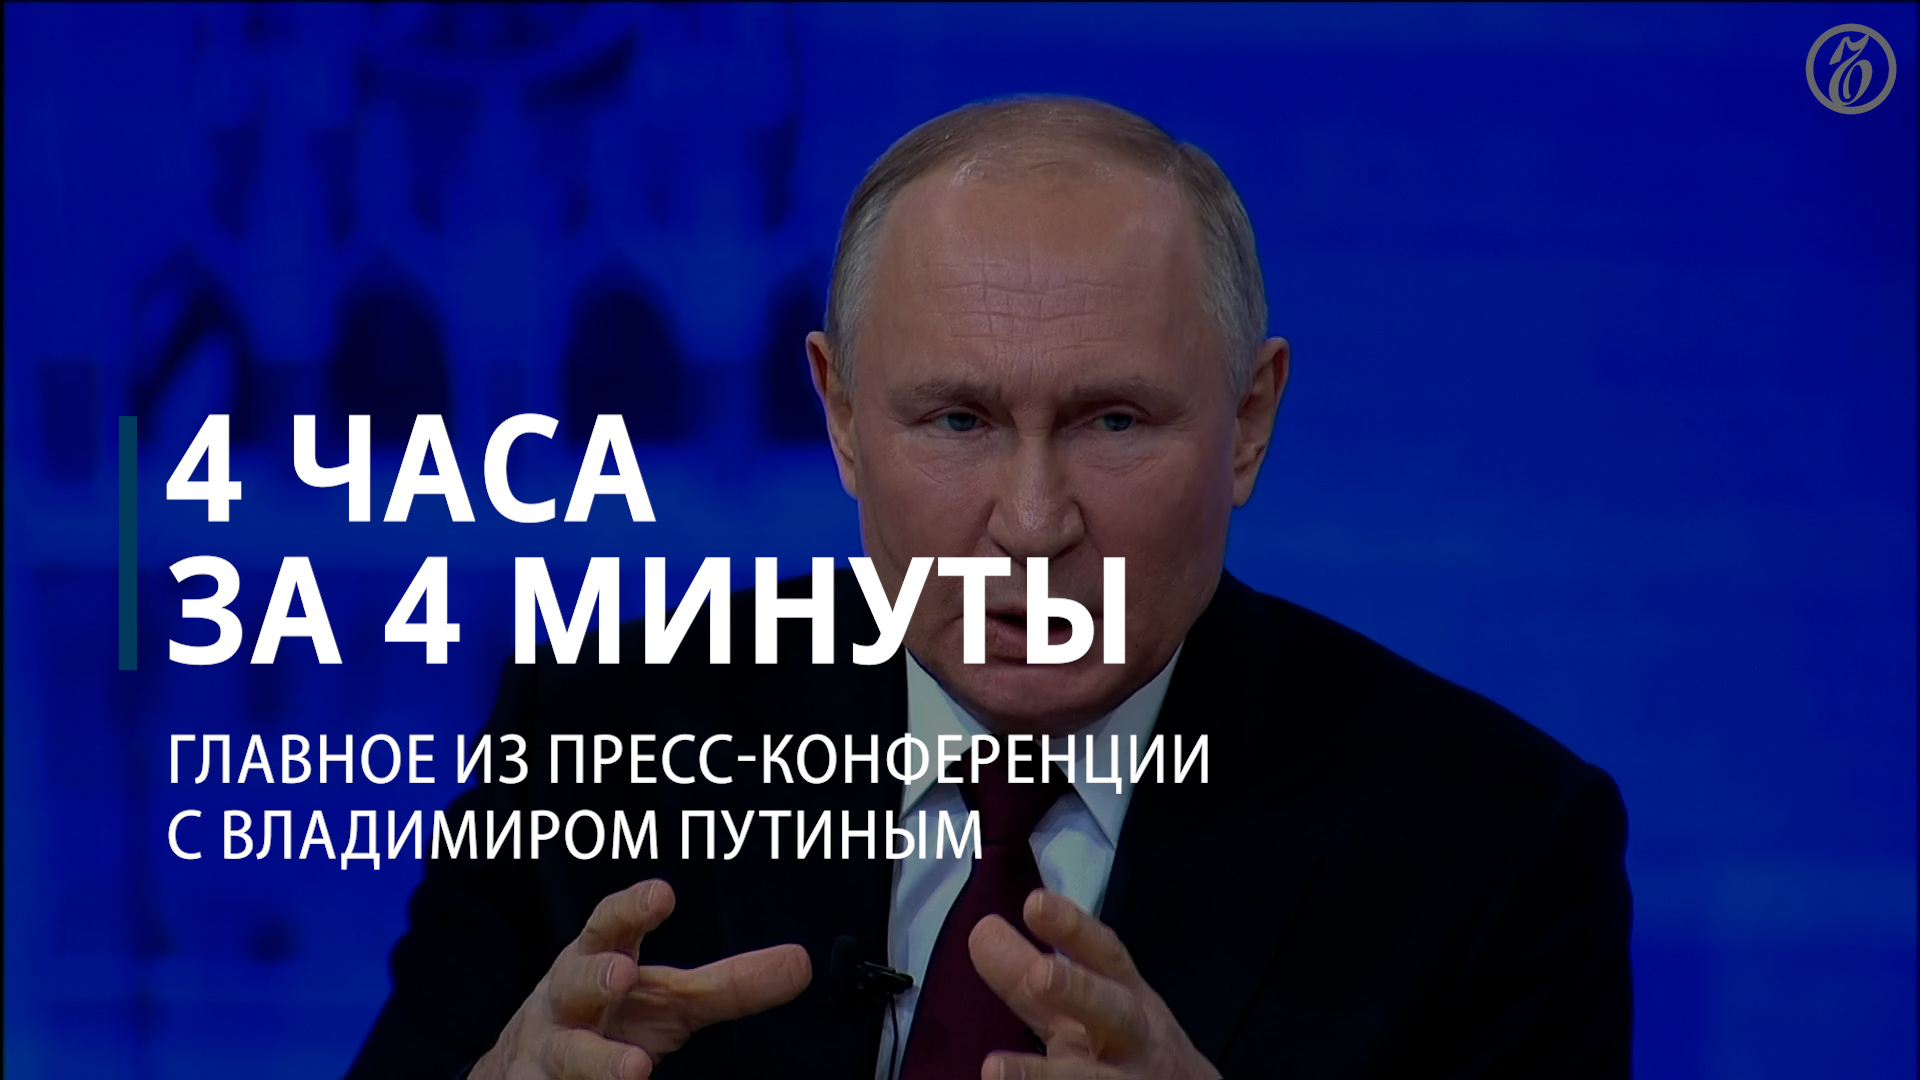 Итоги года с Владимиром Путиным. Главное — Коммерсантъ